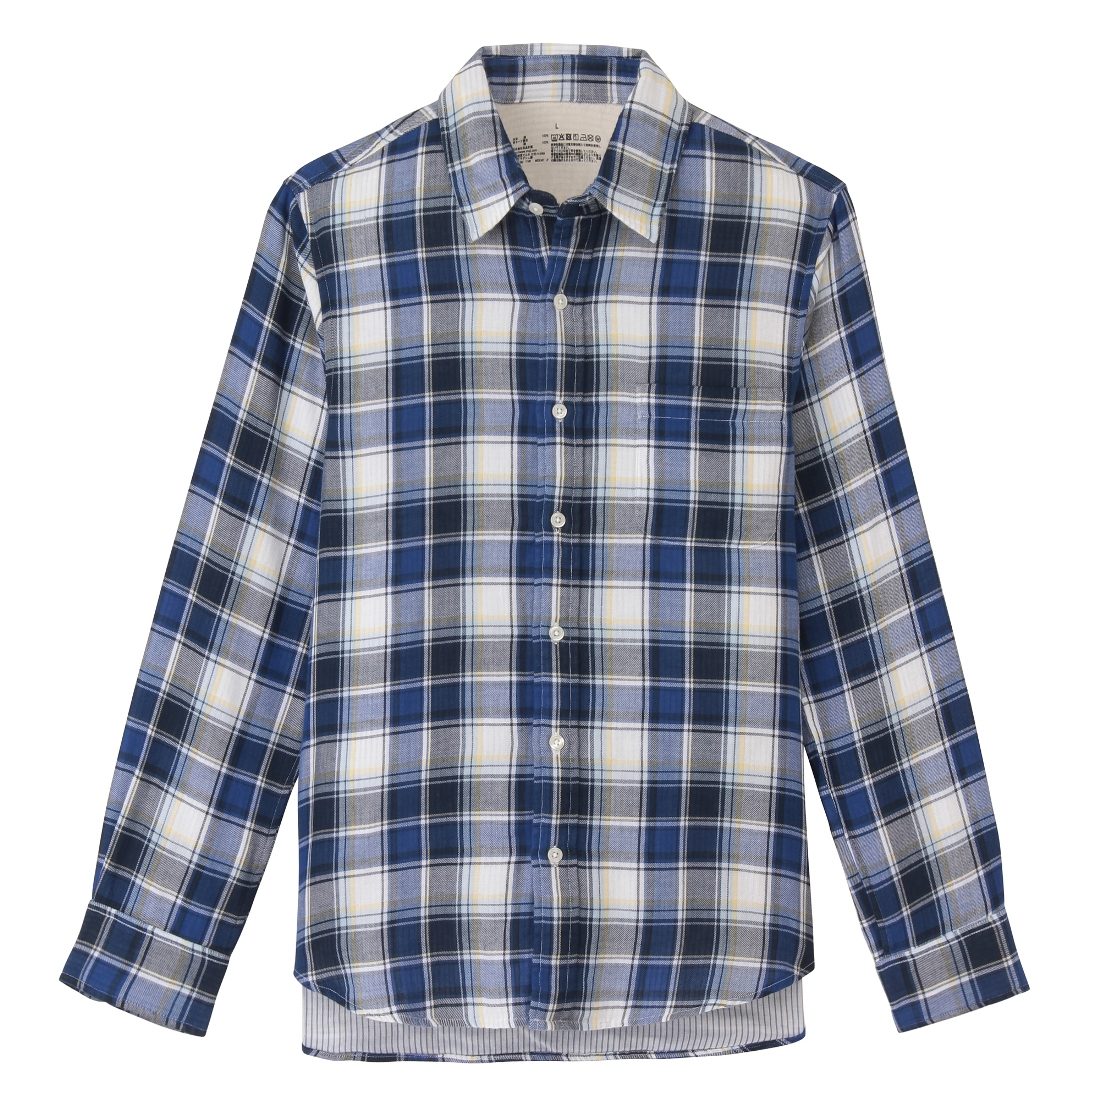 Checkered shirt (P1,850) 